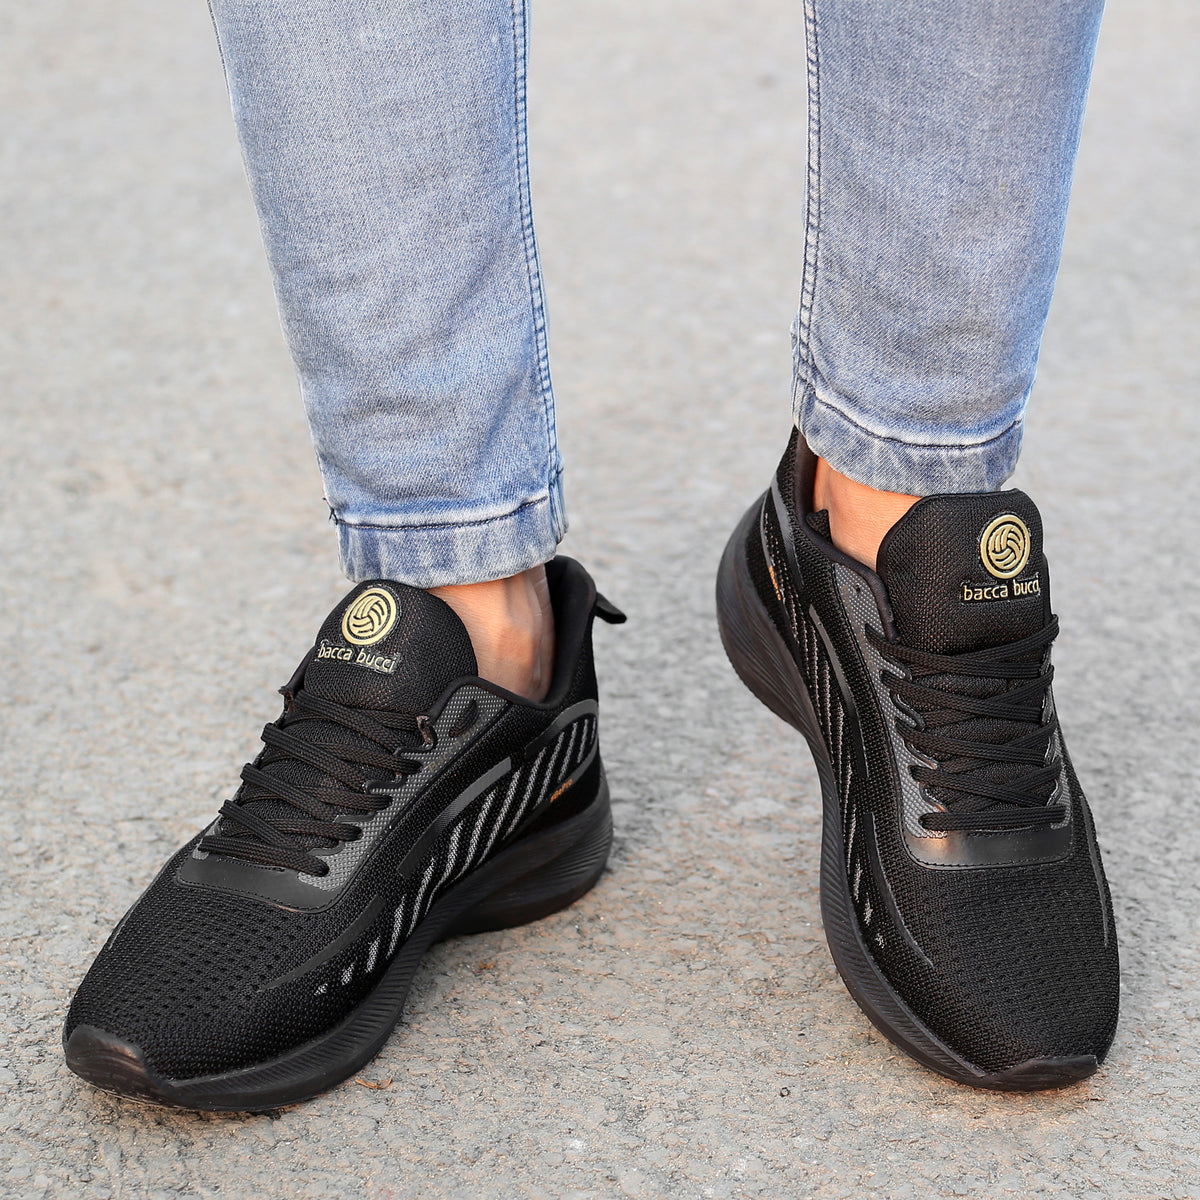 Nike Air Force One Low Top Triple Black Sneakers AF1 Uptown Womens 7.5 38.5  New | eBay